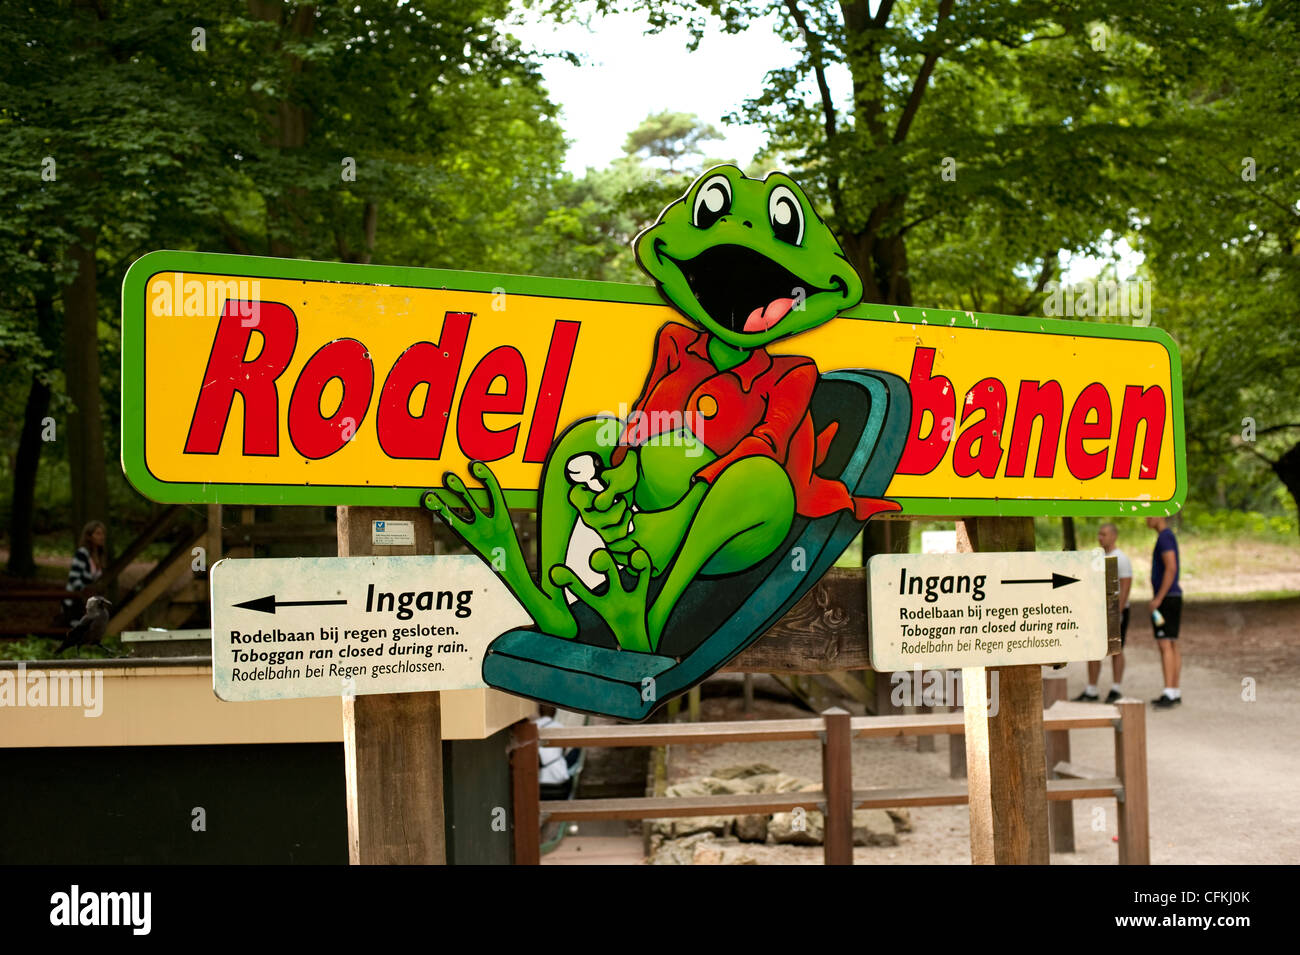 Rodel Banen Amusement Park Wassenaar Holland Netherlands Europe EU Stock Photo